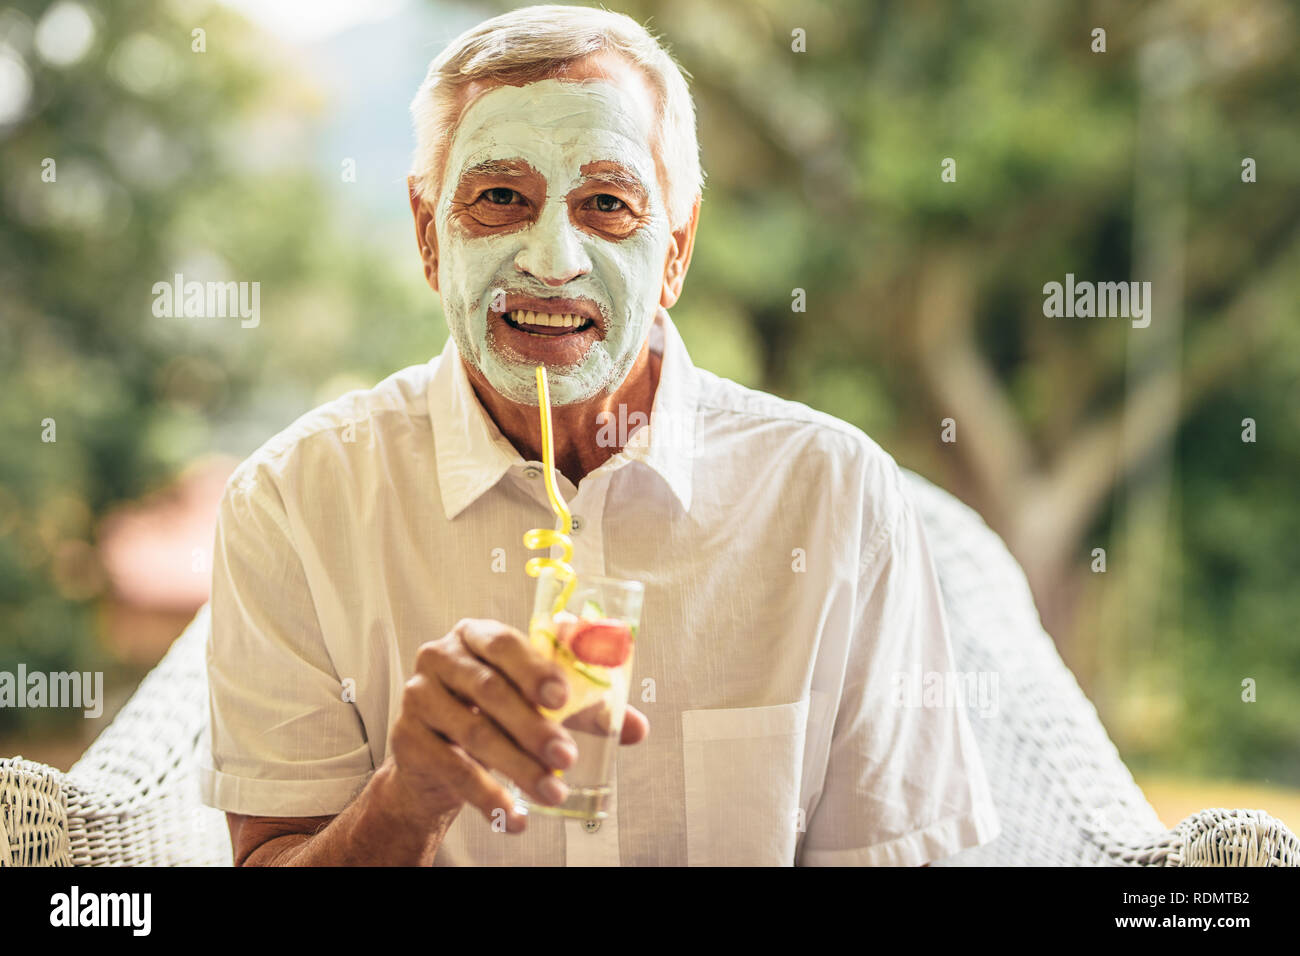 Lustig, älterer Mann mit Lehm Maske auf Gesicht Saft trinken. Ältere Menschen zu Hause kümmert sich um seine Haut im Alter in den Ruhestand. Stockfoto